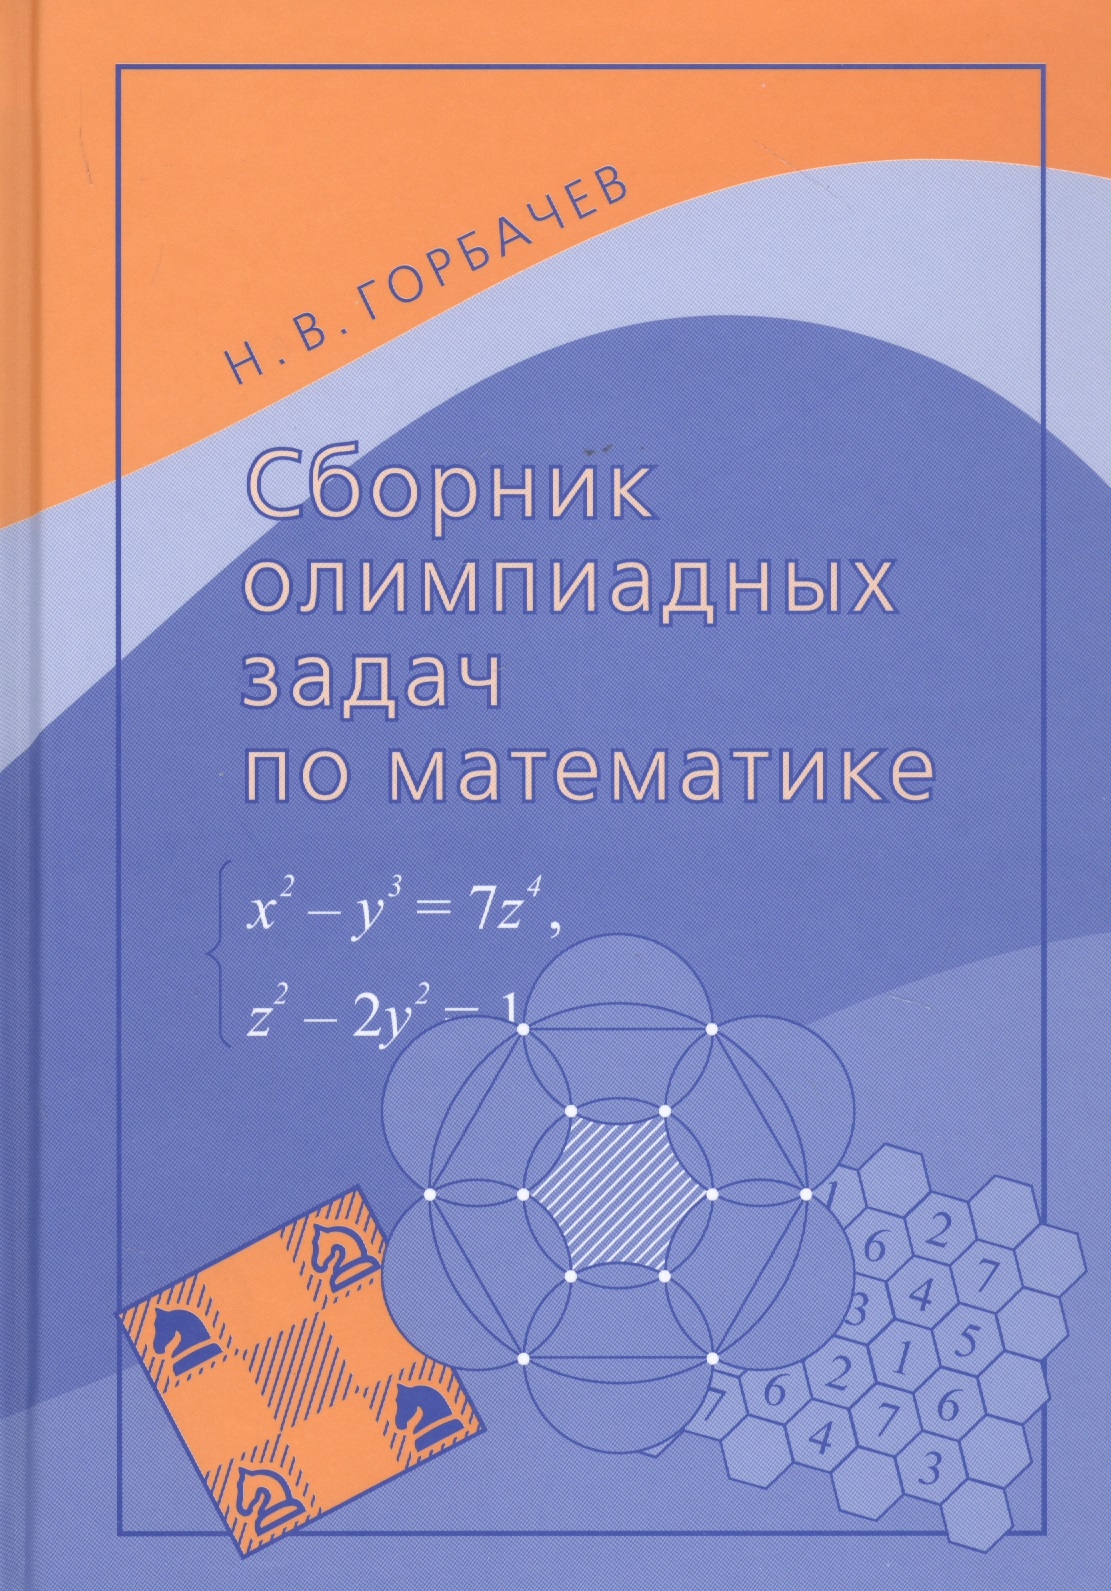 Сборник олимпиадных задач по математике мутли андрей федорович сборник задач по гармонии